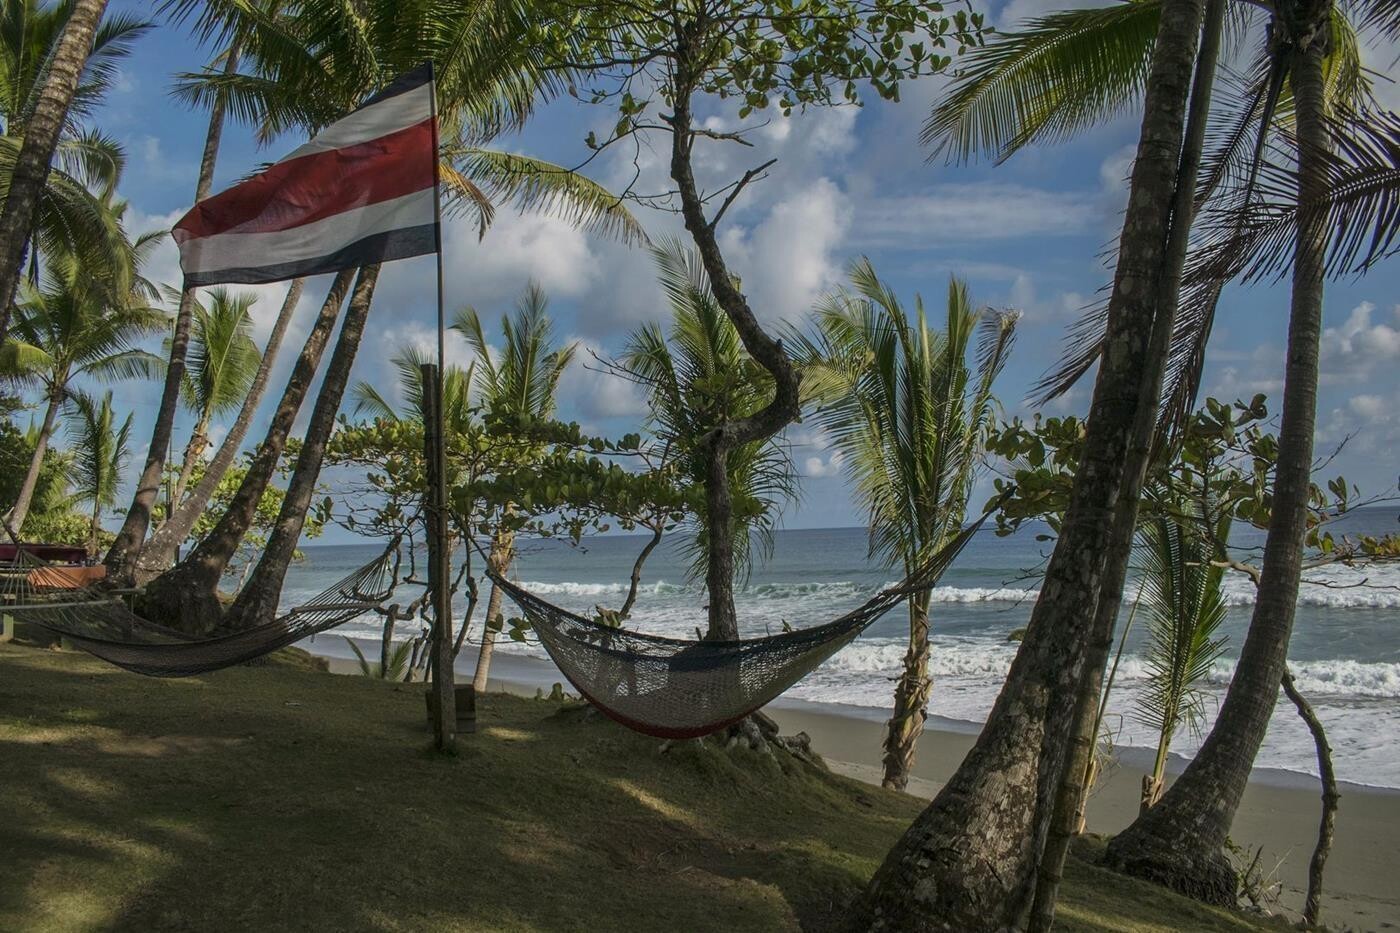 Hængekøjer ophængt fra palmetræer på sandstrand med brusende bølger i baggrunden. Costa Ricas flag blæser i vinden. 